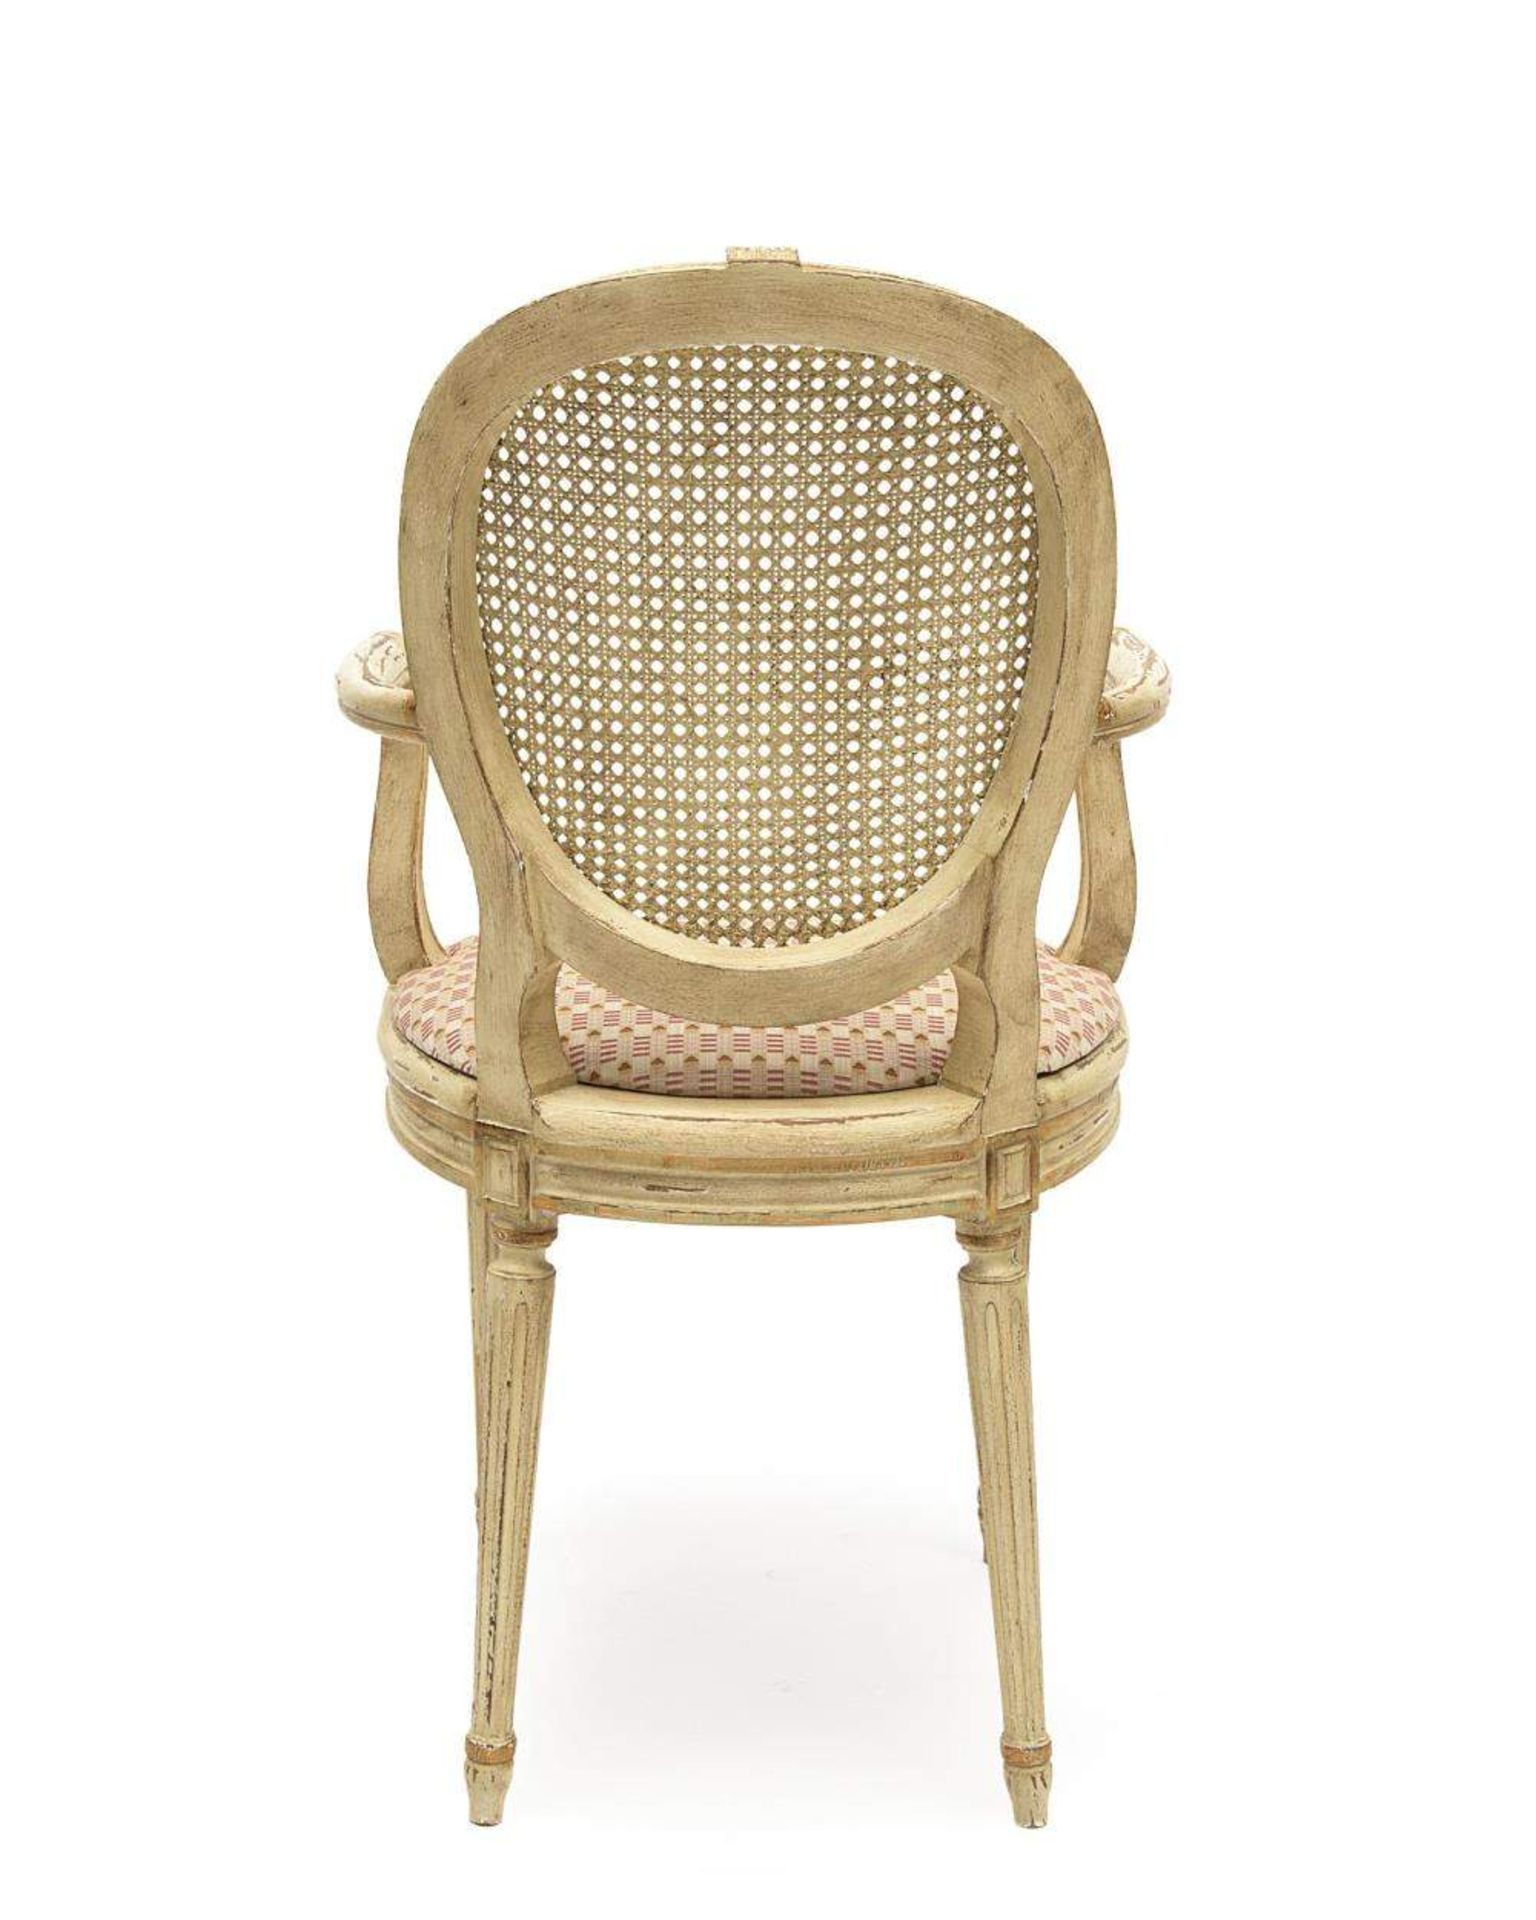 paire de fauteuils de style Louis XVI en bois peint blanc et assise et dossier canné

H. 94x57x53 - Image 3 of 3